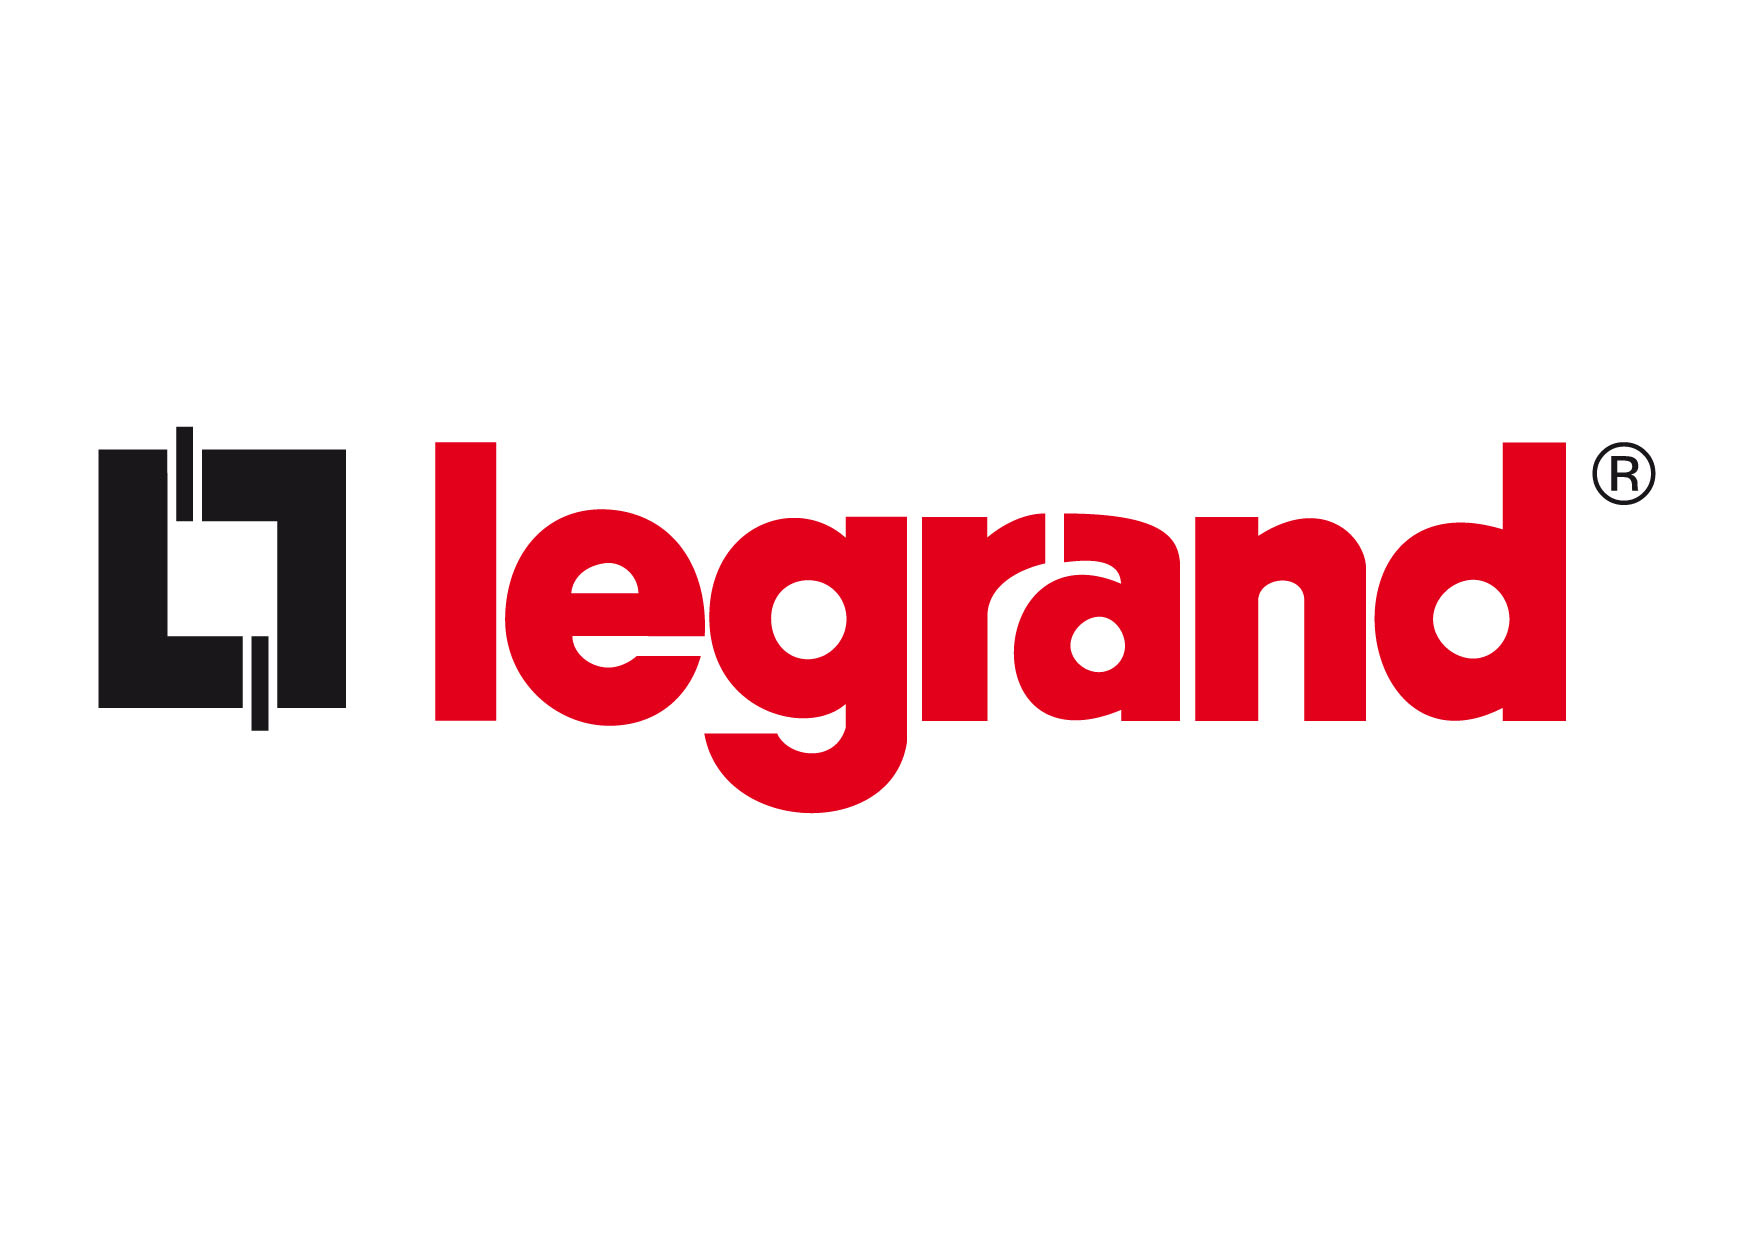 https://mms.businesswire.com/media/20130814005965/en/379102/5/Legrand_logo.jpg